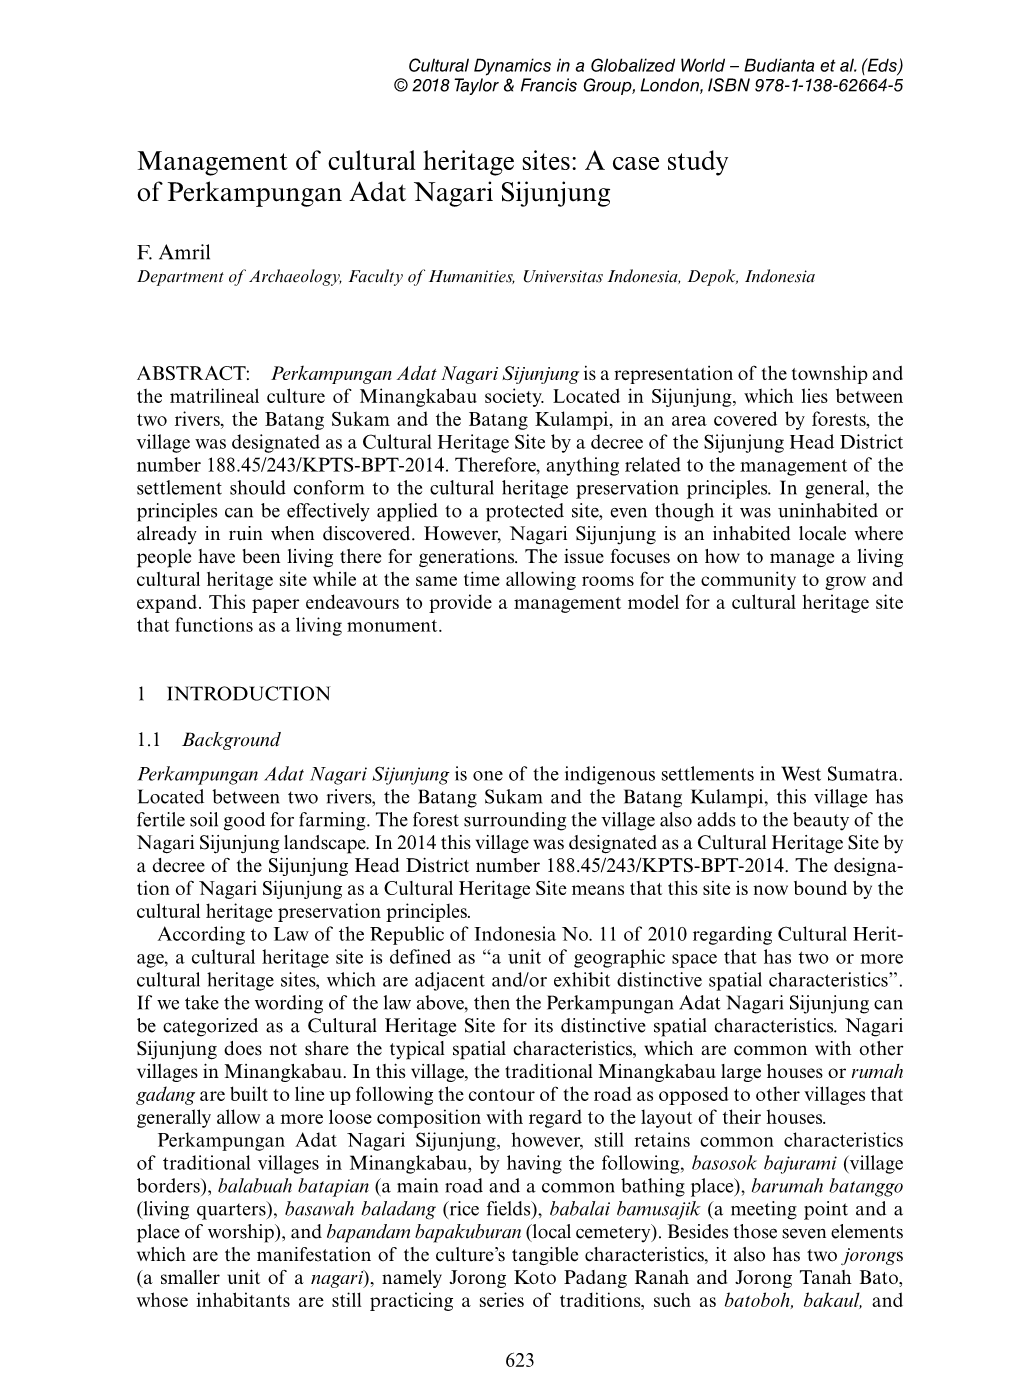 Management of Cultural Heritage Sites: a Case Study of Perkampungan Adat Nagari Sijunjung